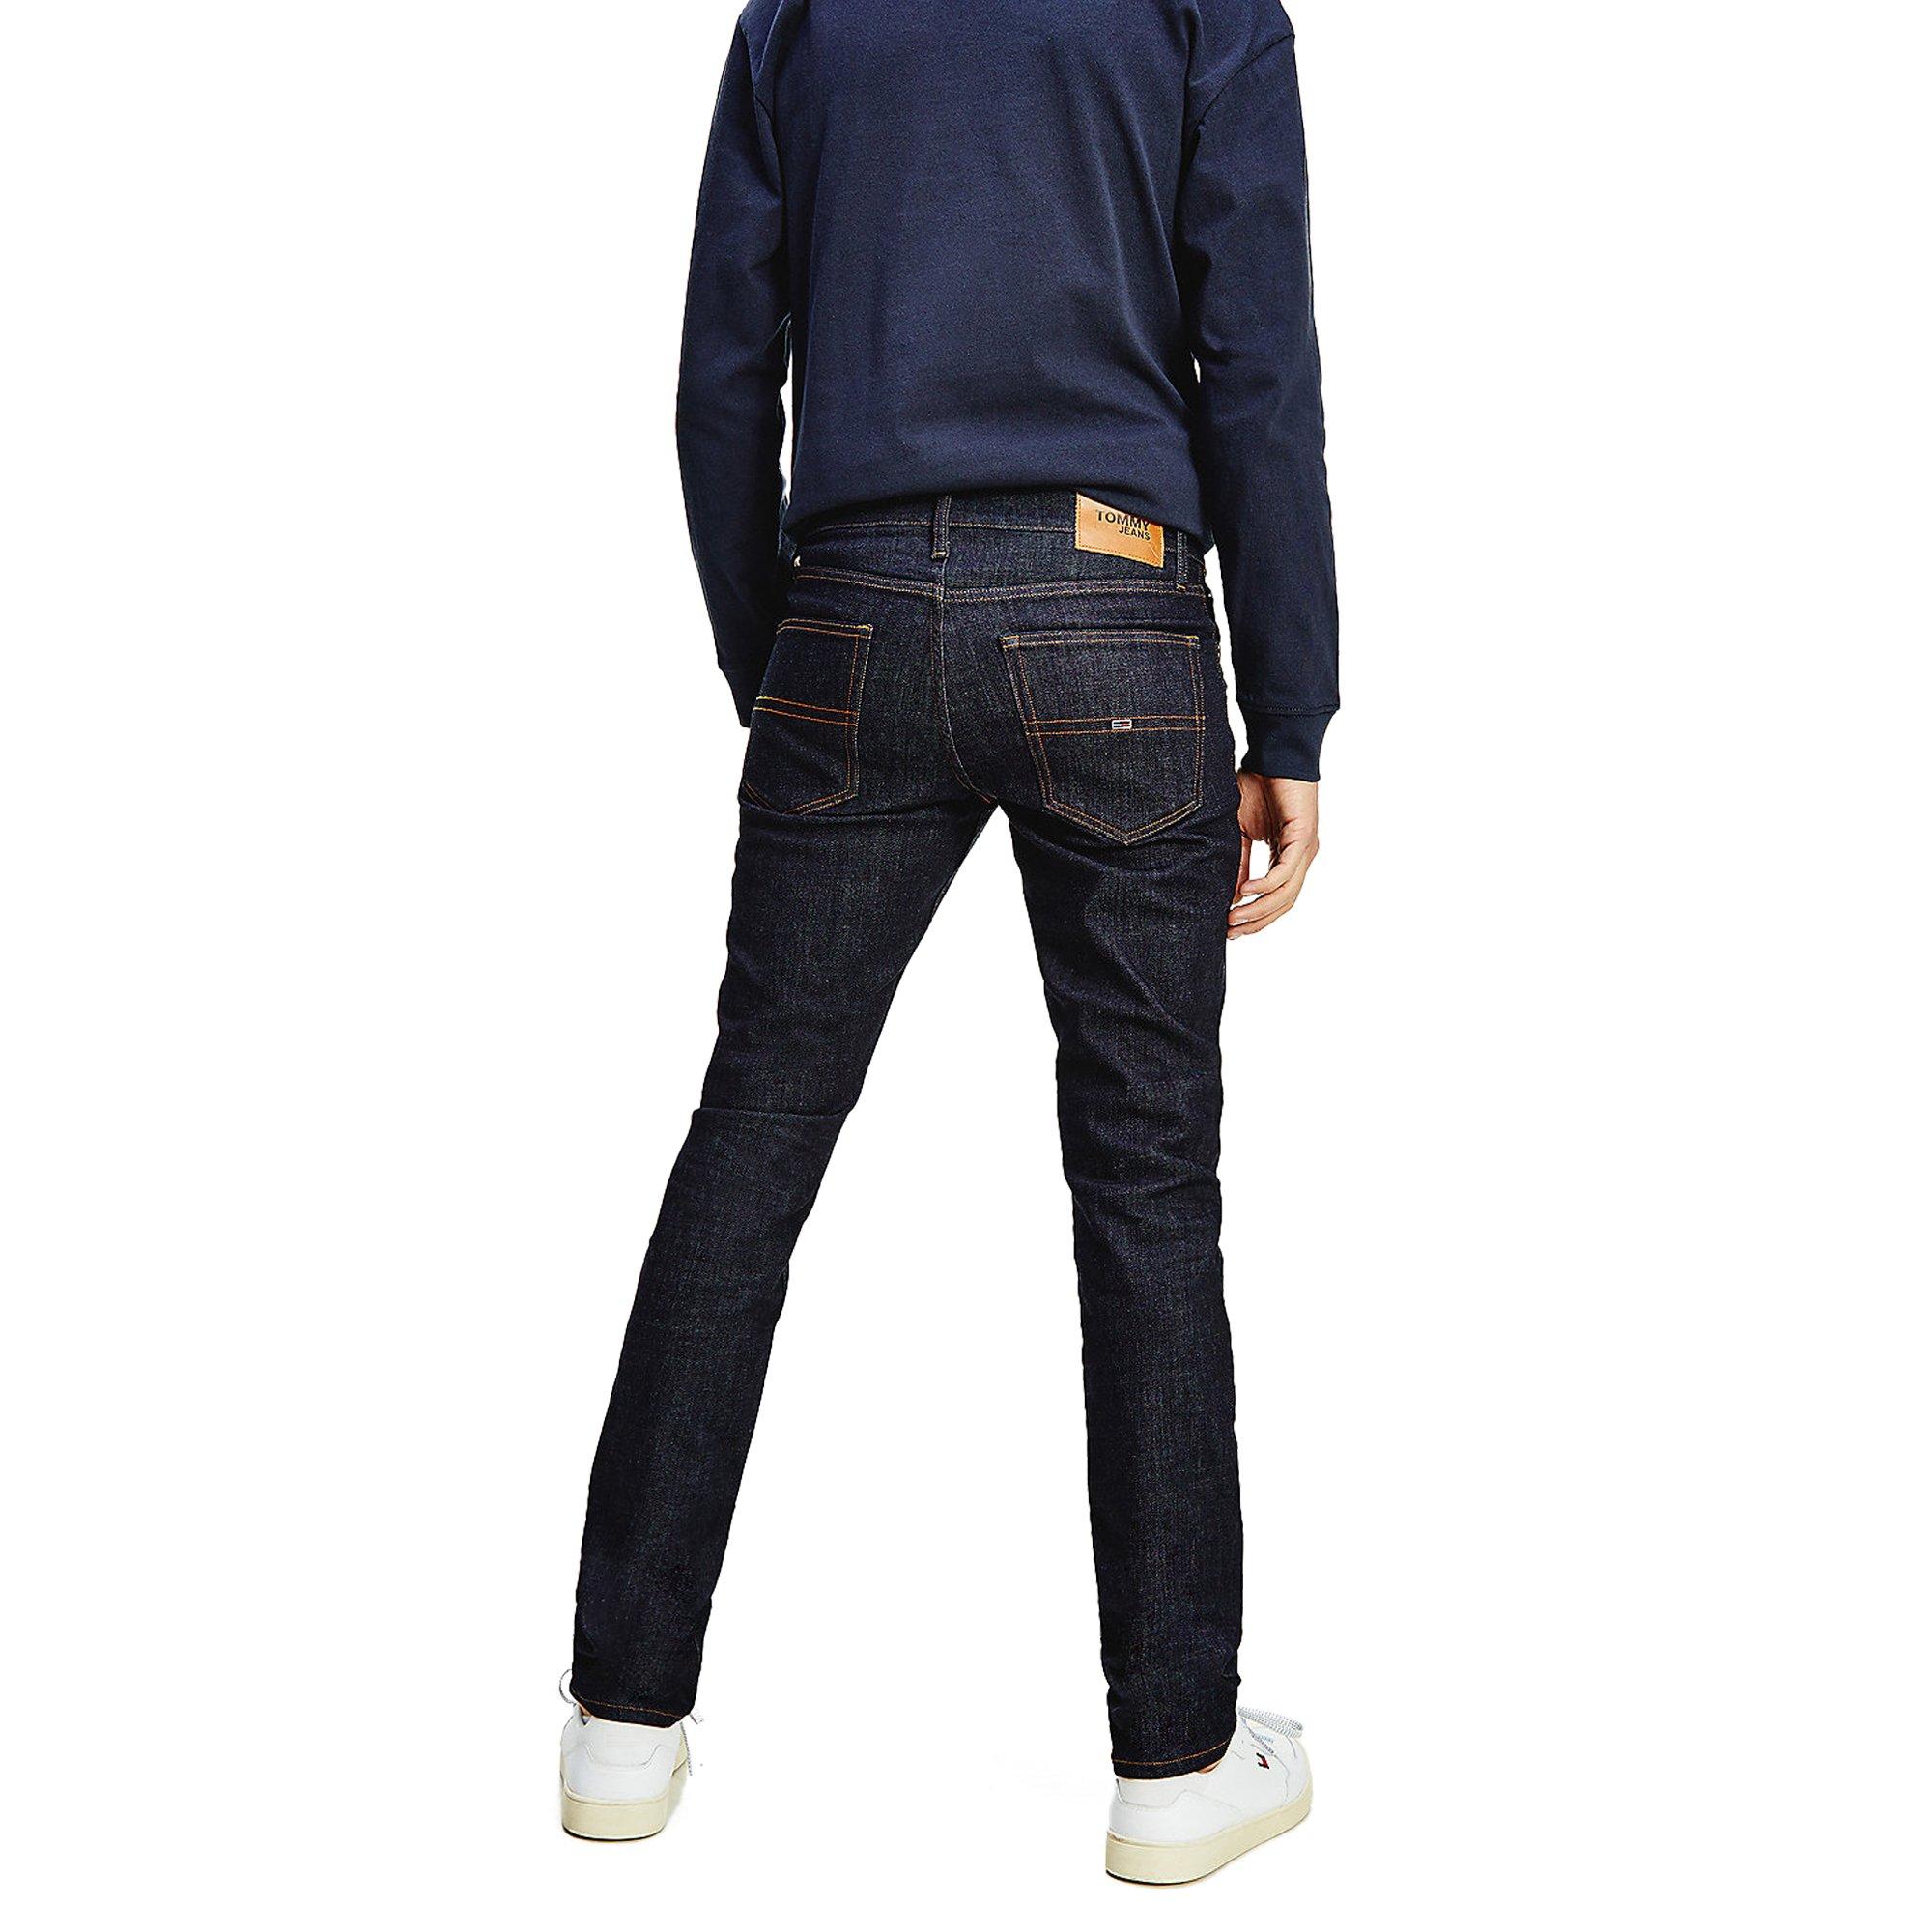 Tommy Hilfiger Denim Tommy Jeans Scanton Slim Jeans in Blue for Men - Save  32% | Lyst